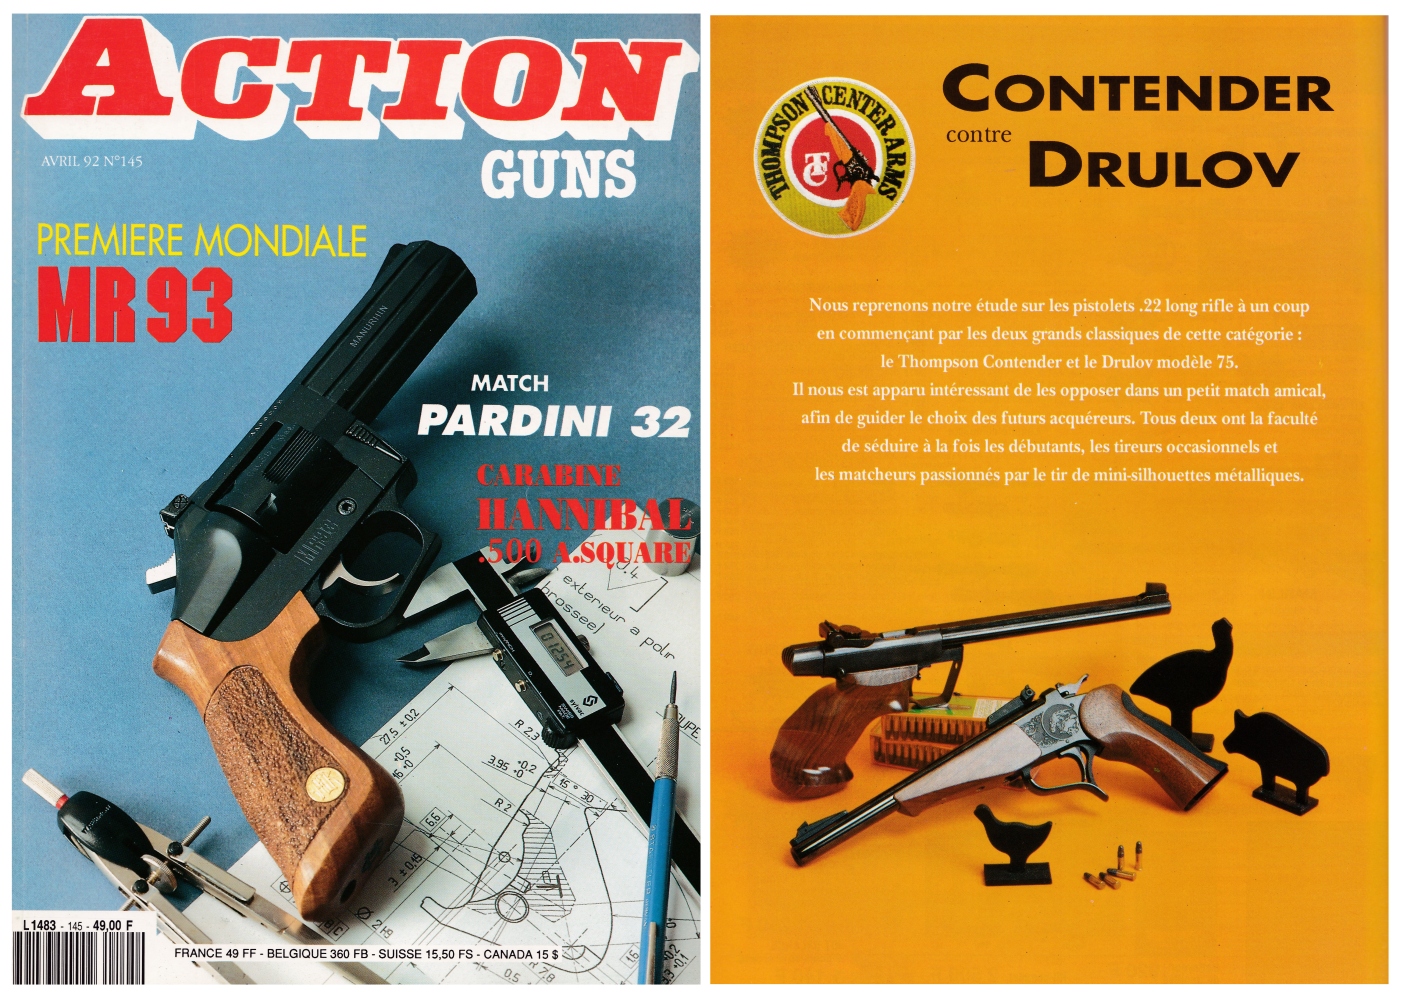 Le banc d'essai comparatif des pistolets Contender et Drulov a été publié sur 6 pages dans le magazine Action Guns n°145 (avril 1992) 